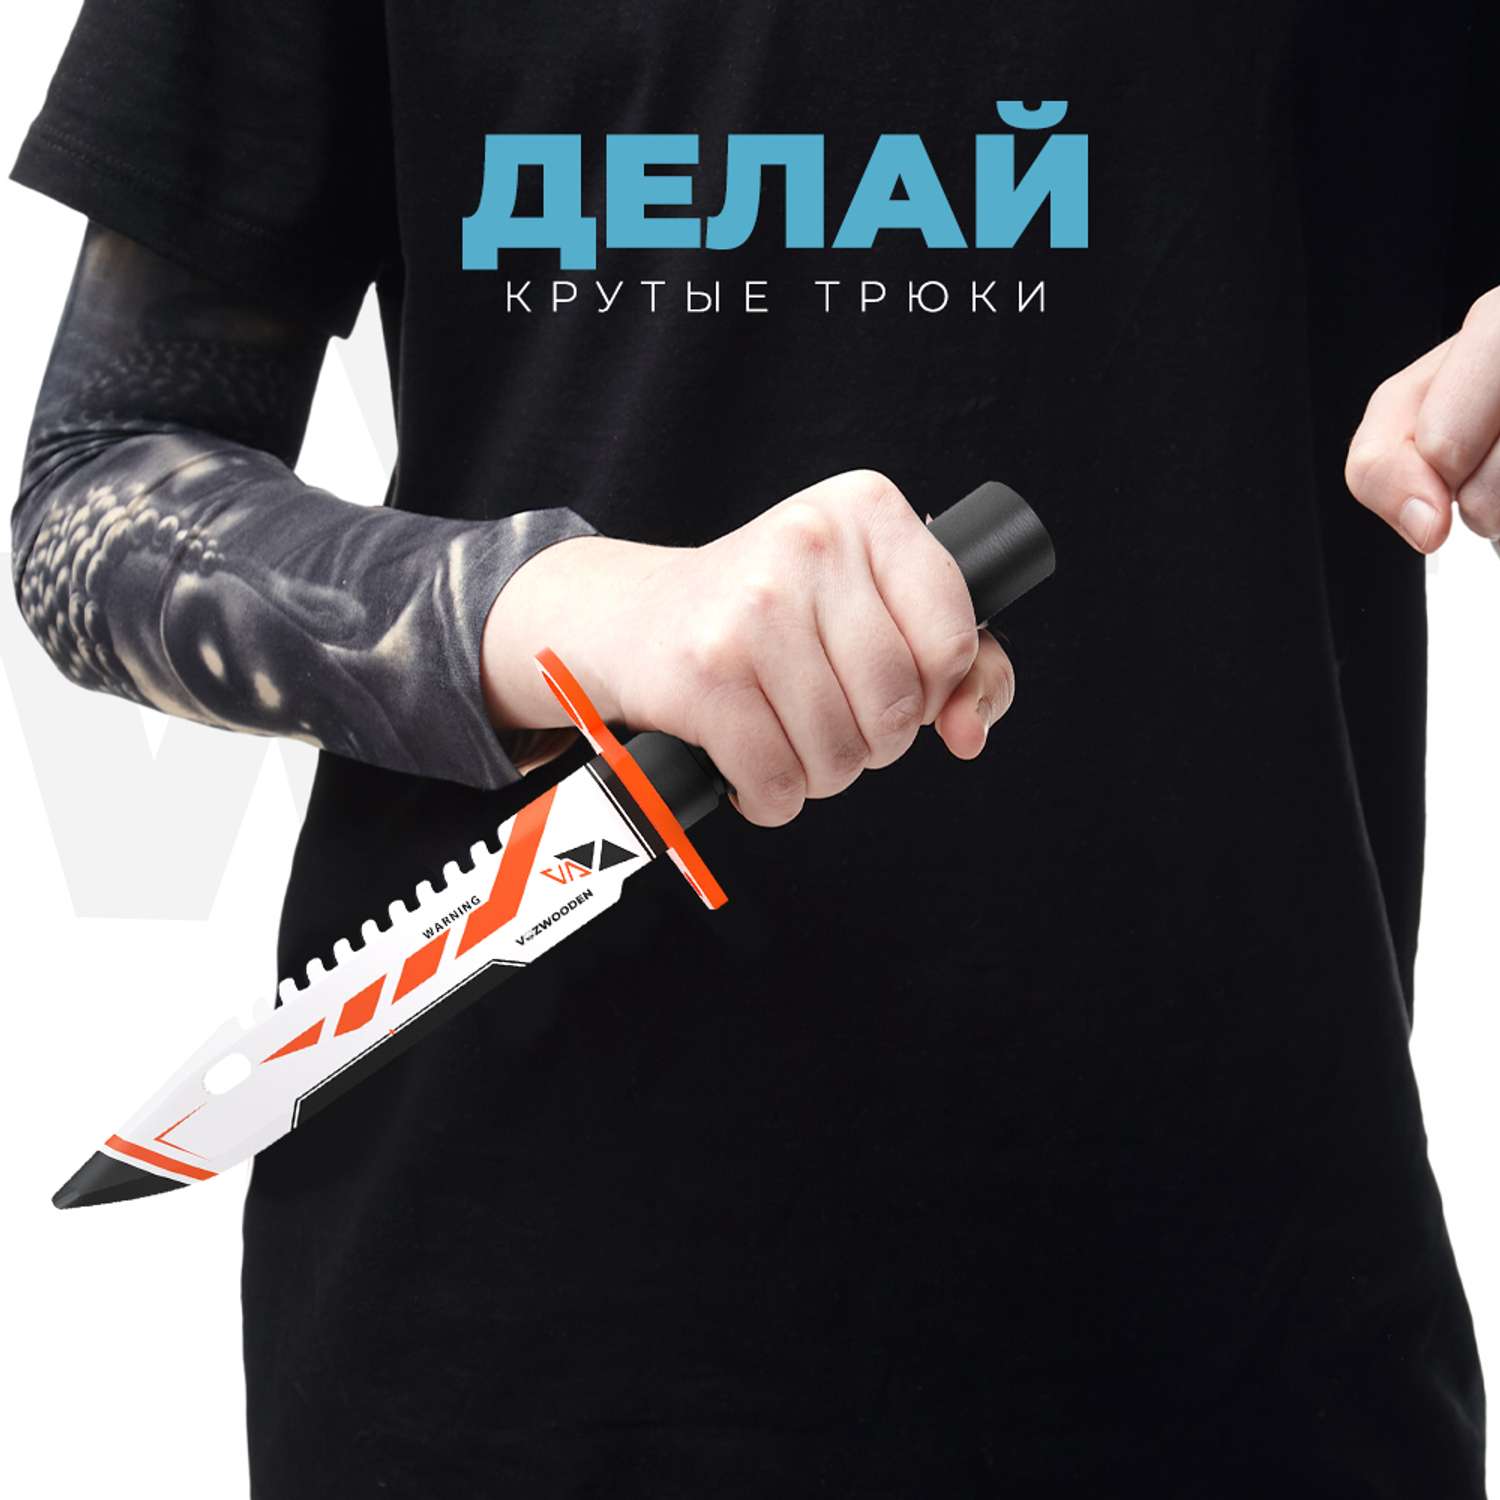 Штык-нож VozWooden Азимов CS GO деревянный М9 Байонет - фото 7